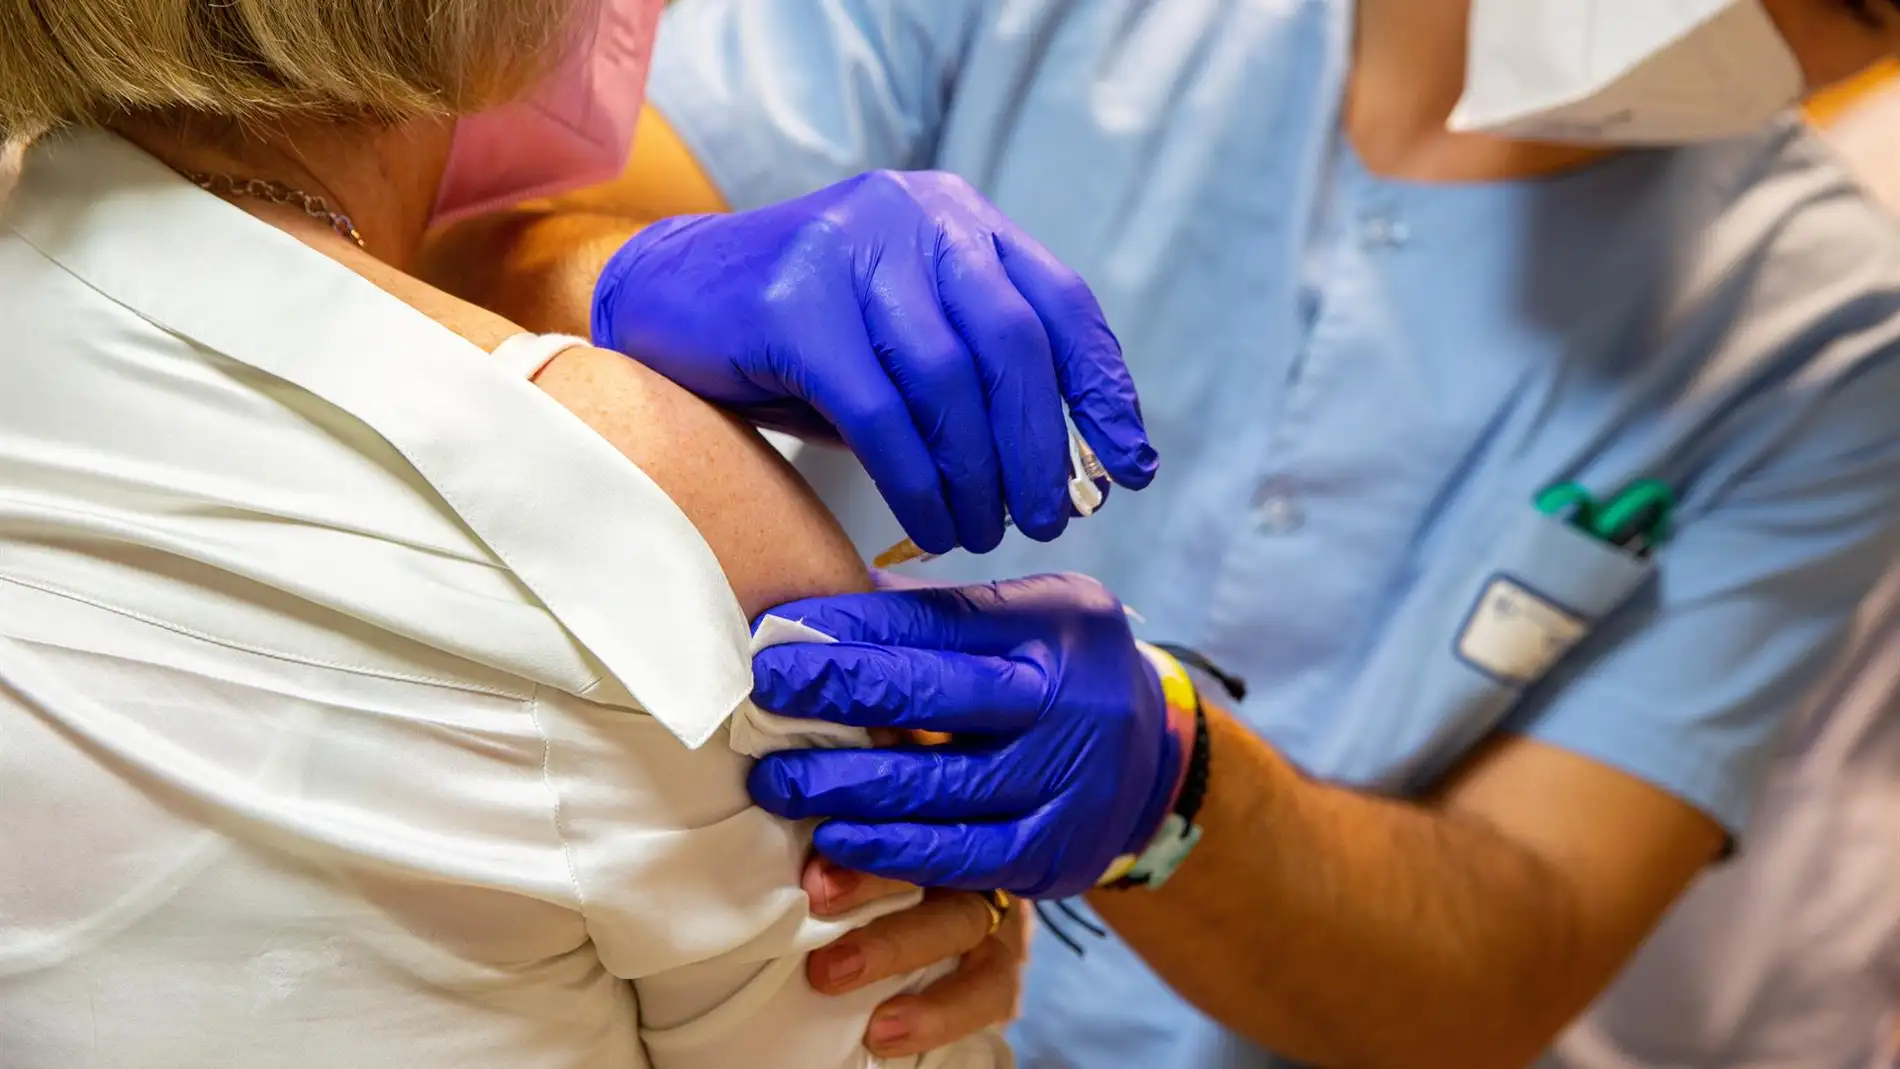  ¿Debería ser obligatoria la vacunación contra la Covid-19?